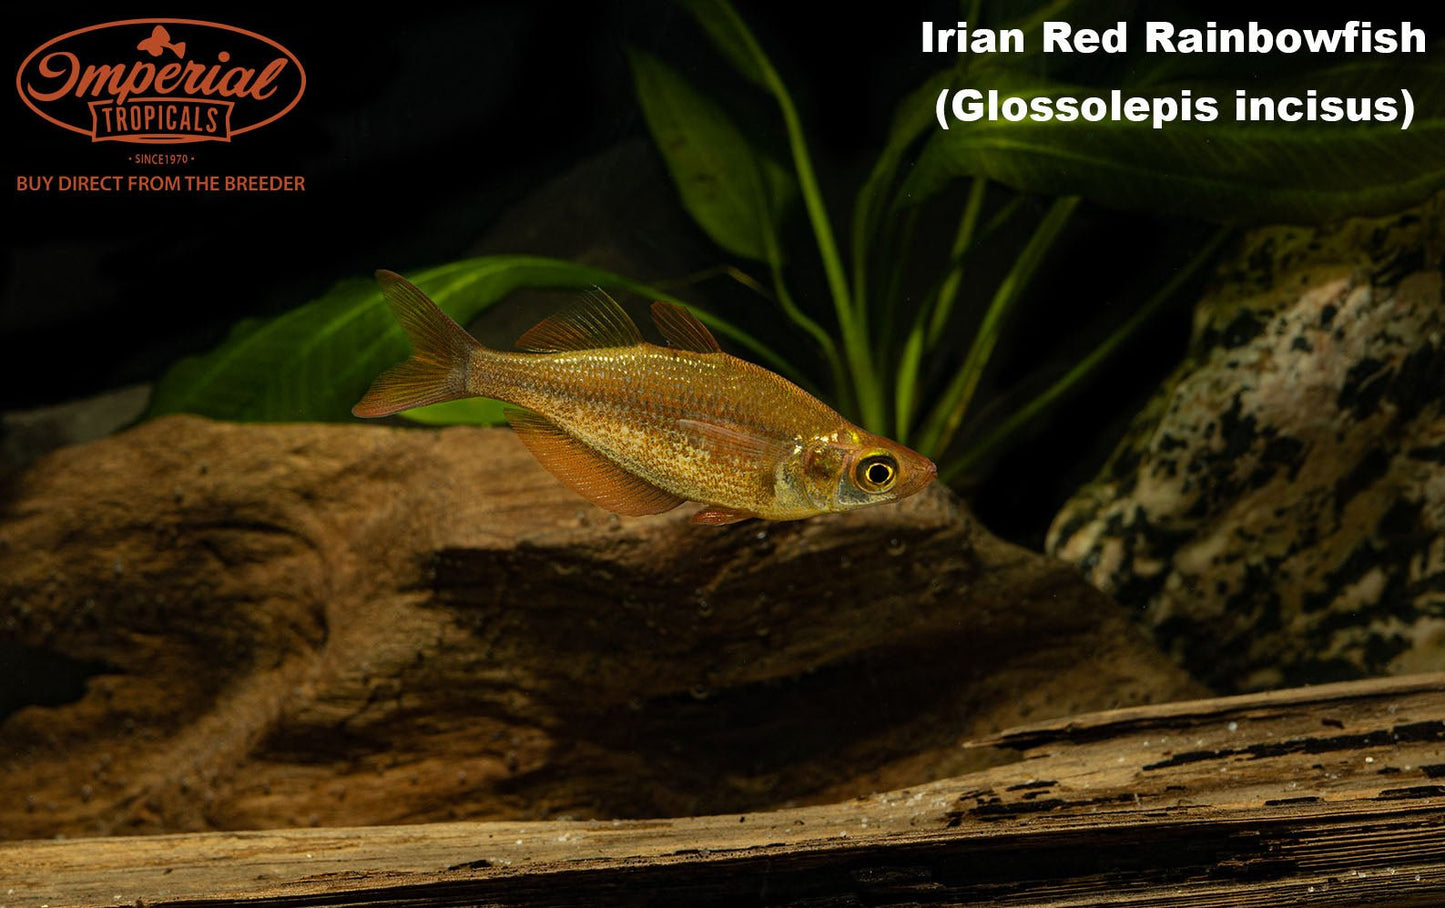 Irian Red Rainbowfish